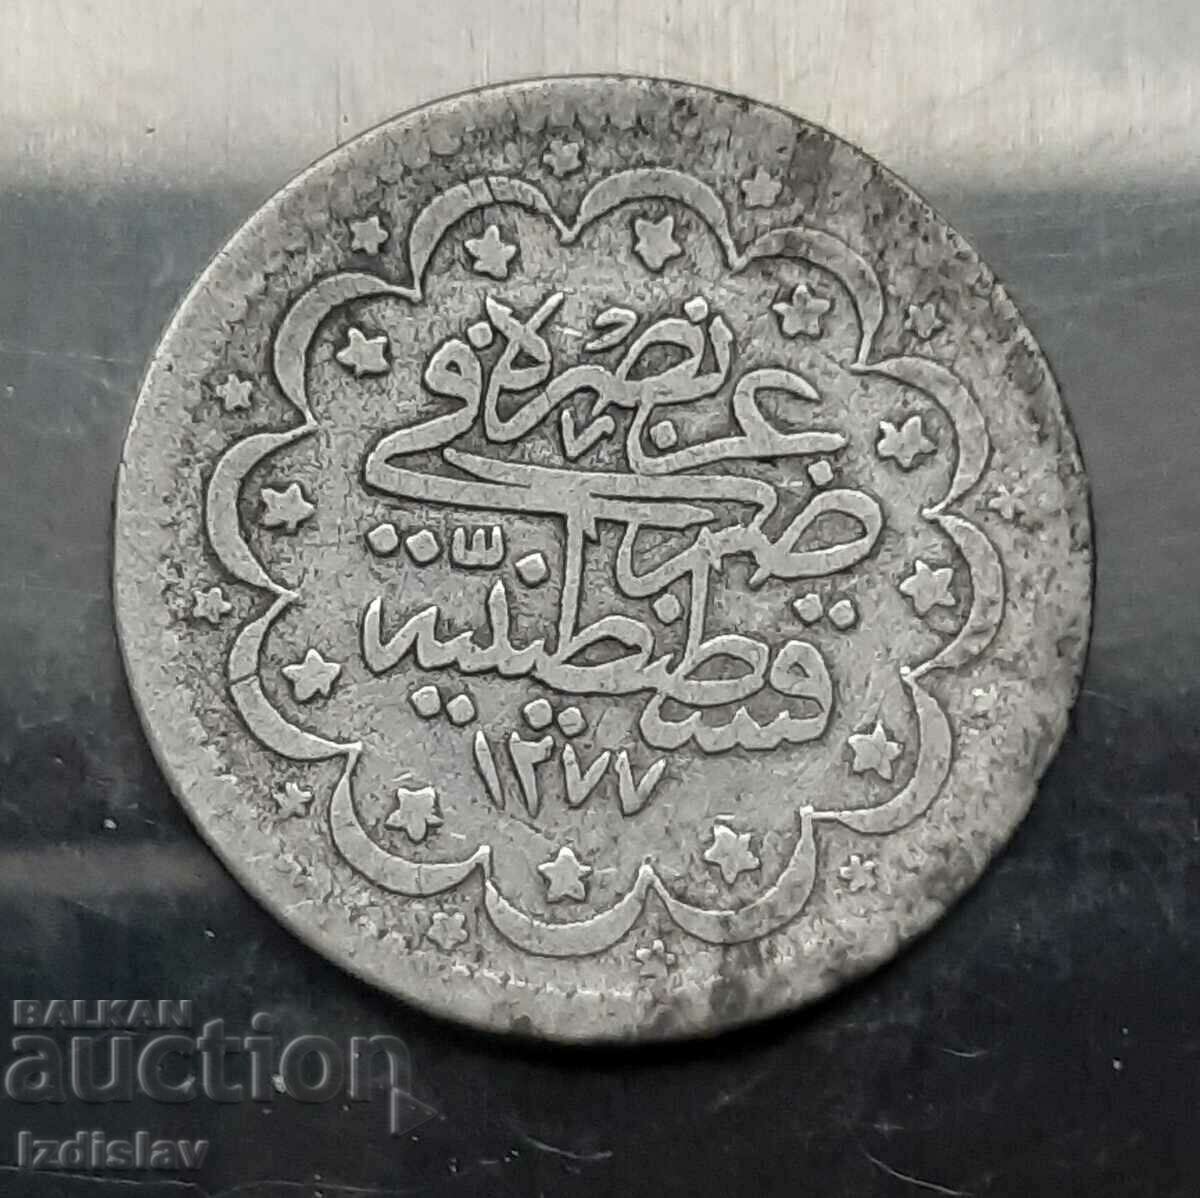 Ottoman 5 Kurush Coin 1277/3 Abdul Aziz R